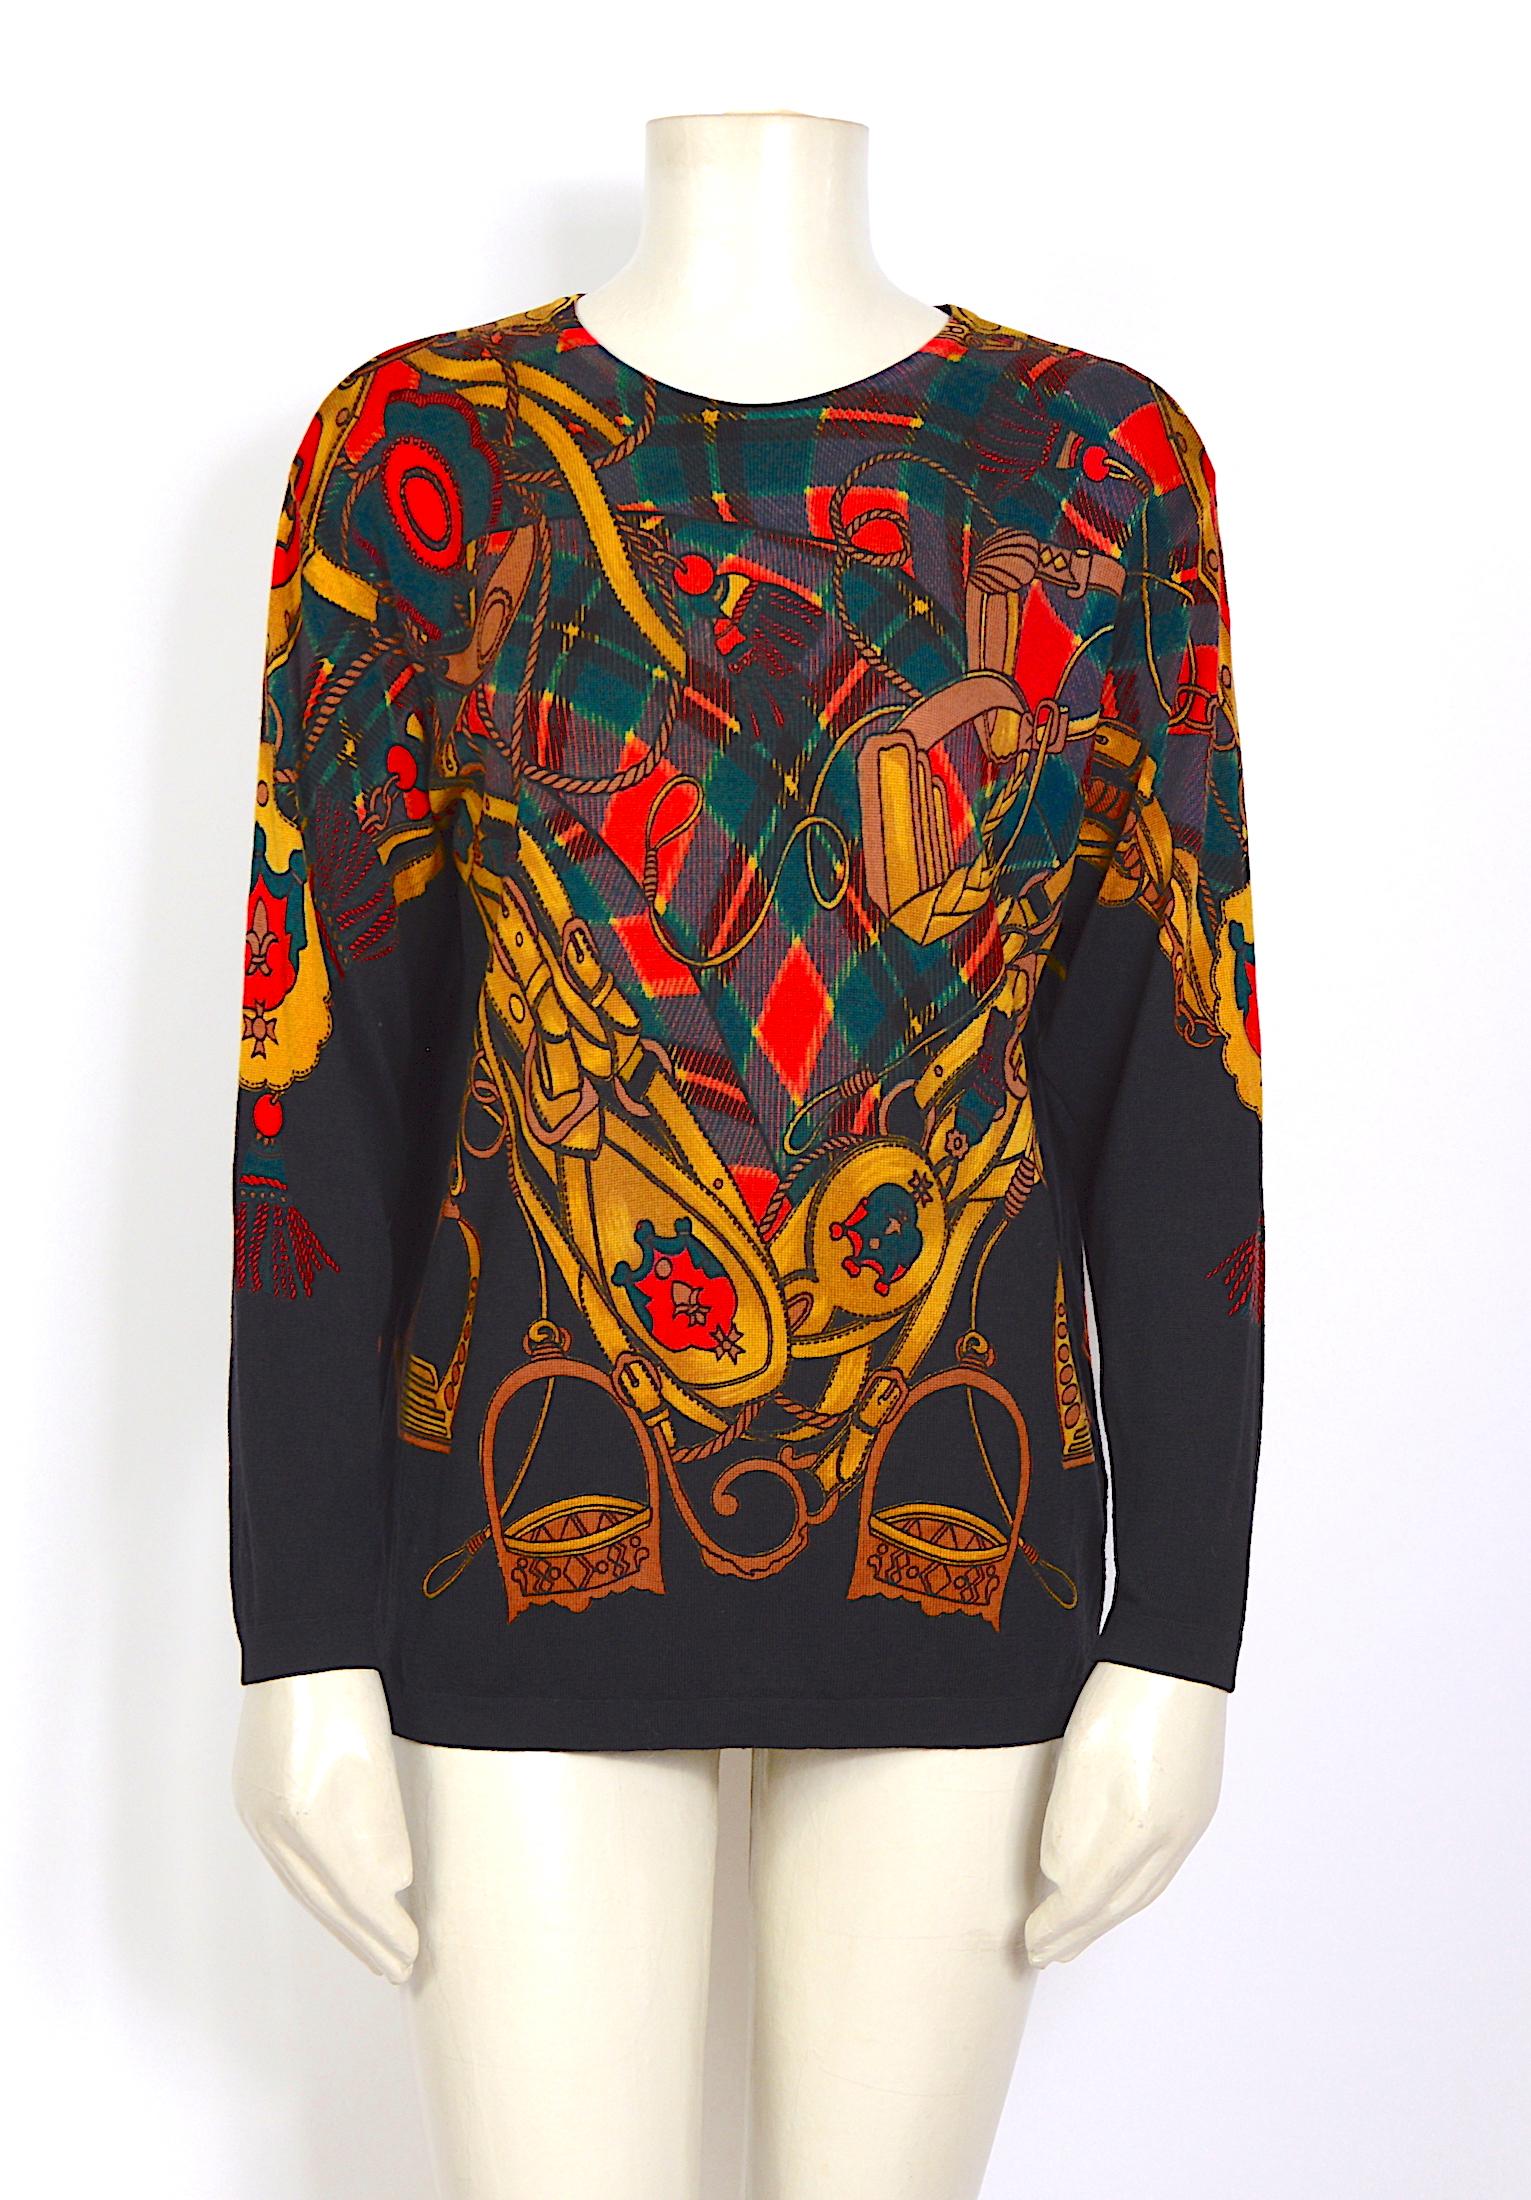 Schöner Vintage-Pullover von Celine Paris aus den 1980er Jahren aus weicher reiner Wolle. 
In ausgezeichnetem Zustand.
Hergestellt in Italien - Größe 42
Um sicher zu sein, dass die Größe stimmt, verwenden Sie bitte die flach gemessenen Maße und